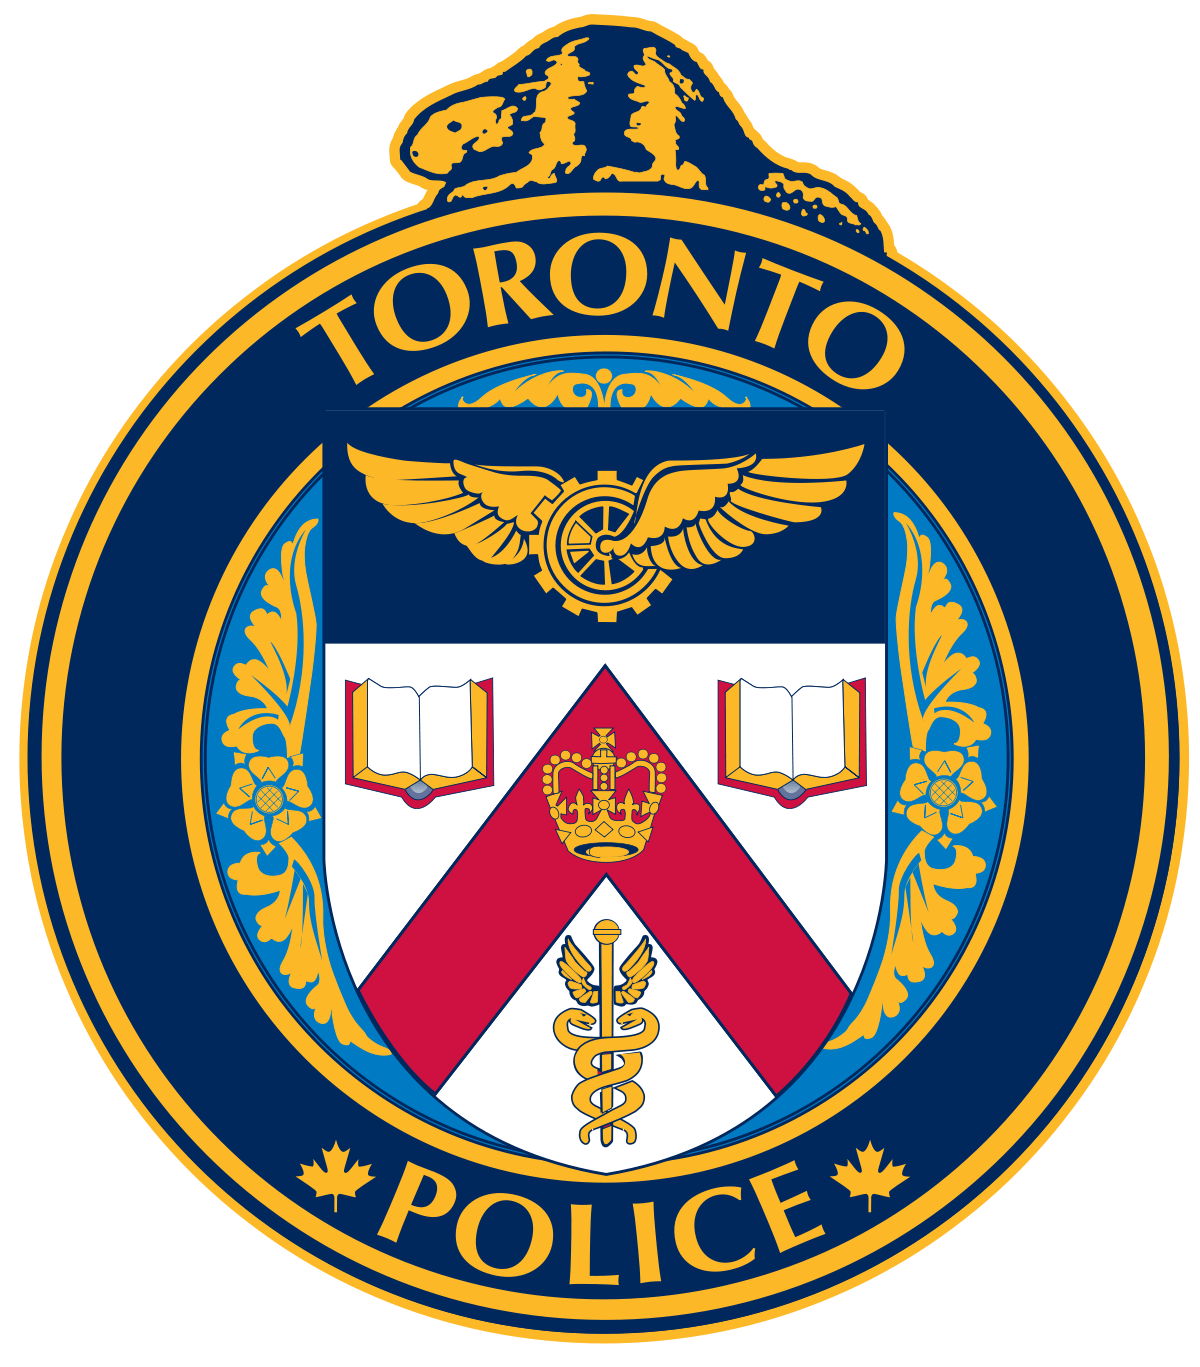 The Police Circle Logo - Toronto Police Service